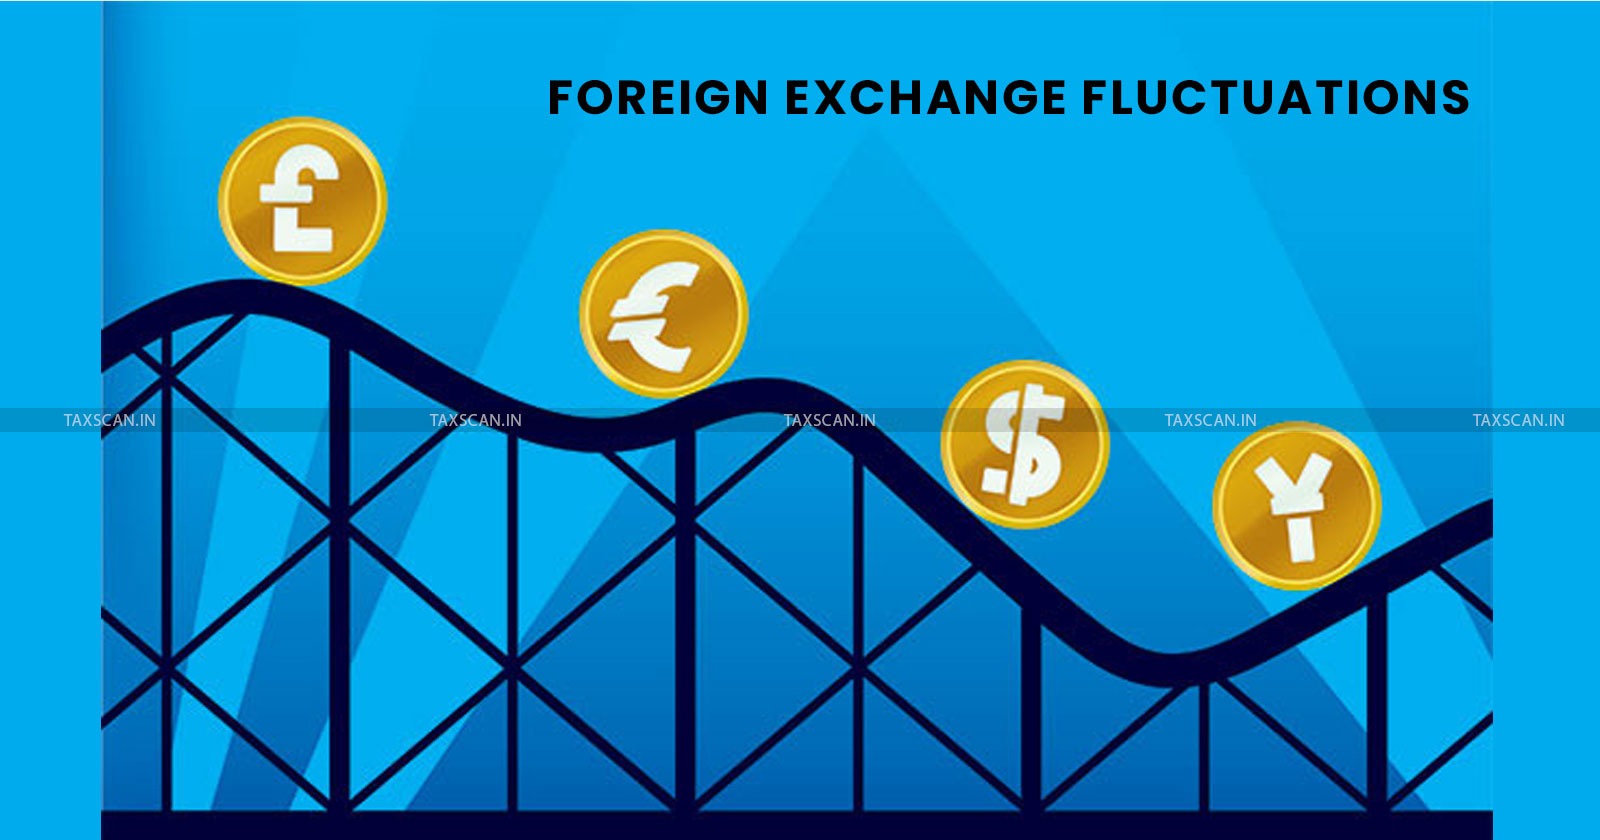 ITAT kolkata - FCNRB - Foreign Exchange - la opala - Foreign Exchange Fluctuation - Foreign Exchange Fluctuation Loss - taxscan